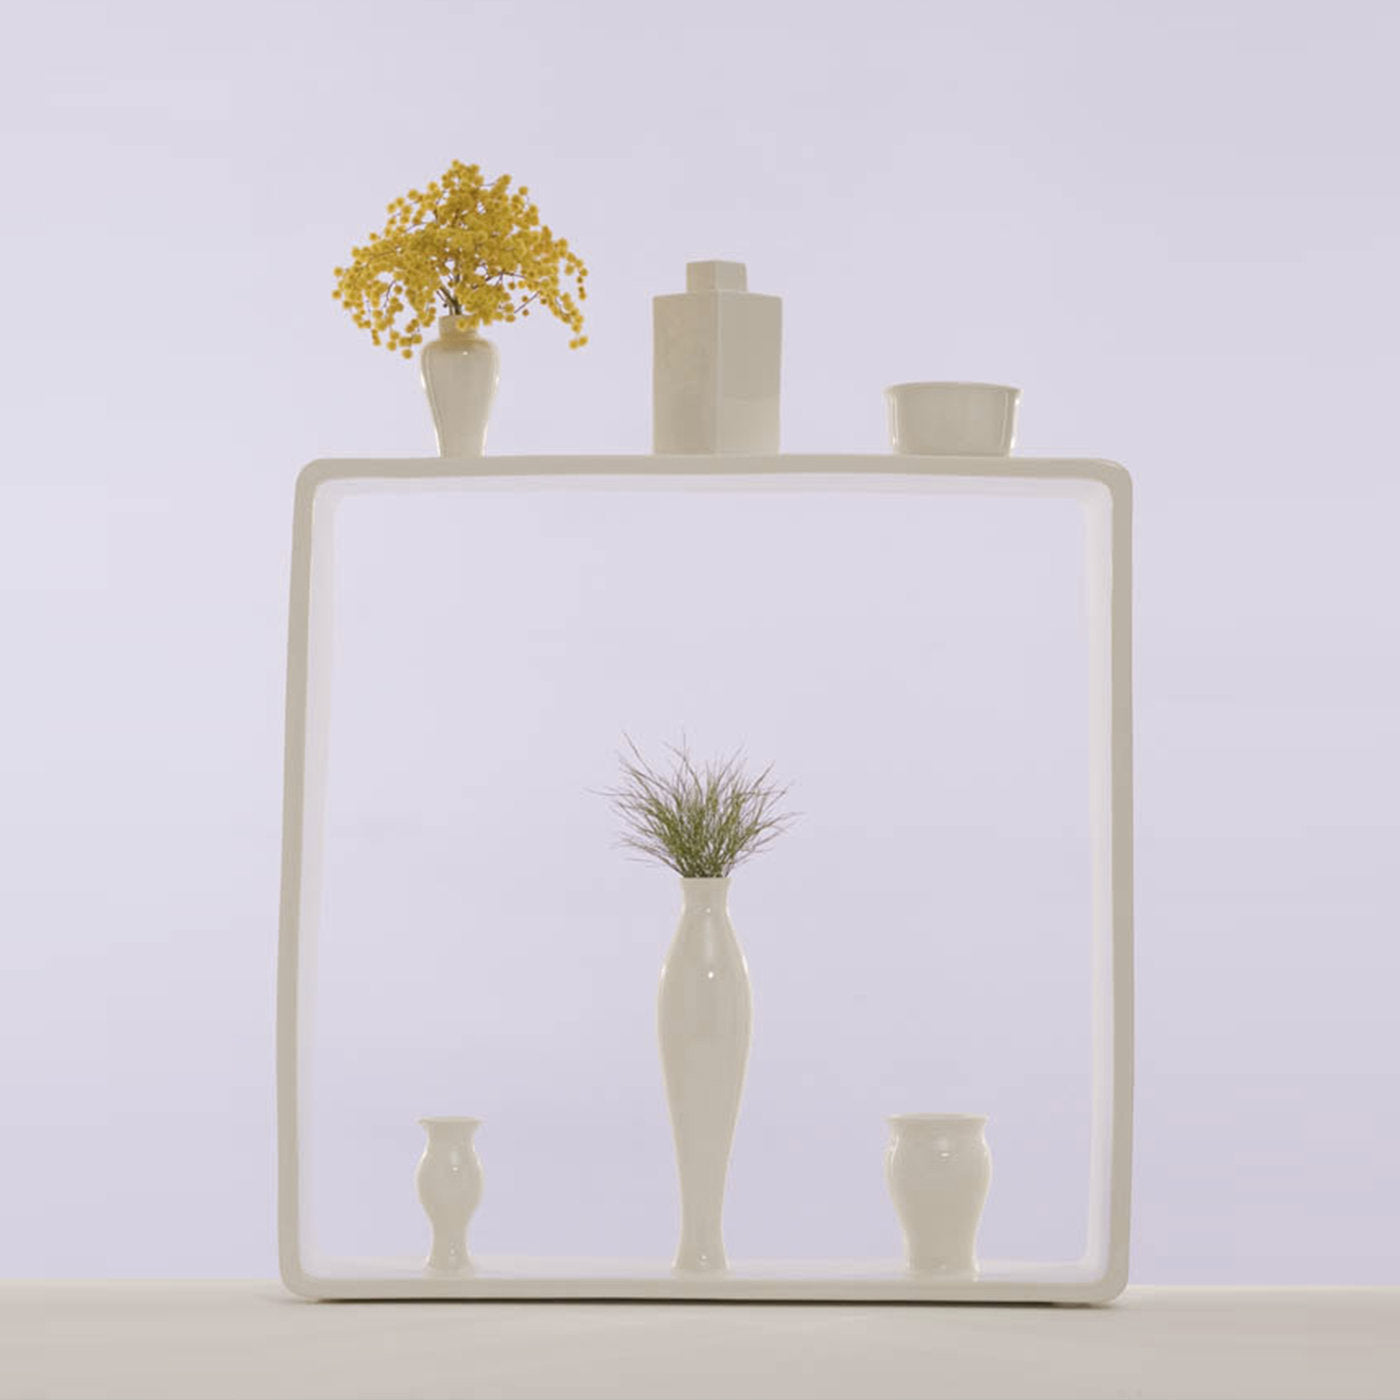 Portali 8 Vase by Andrea Branzi - Alternative view 1